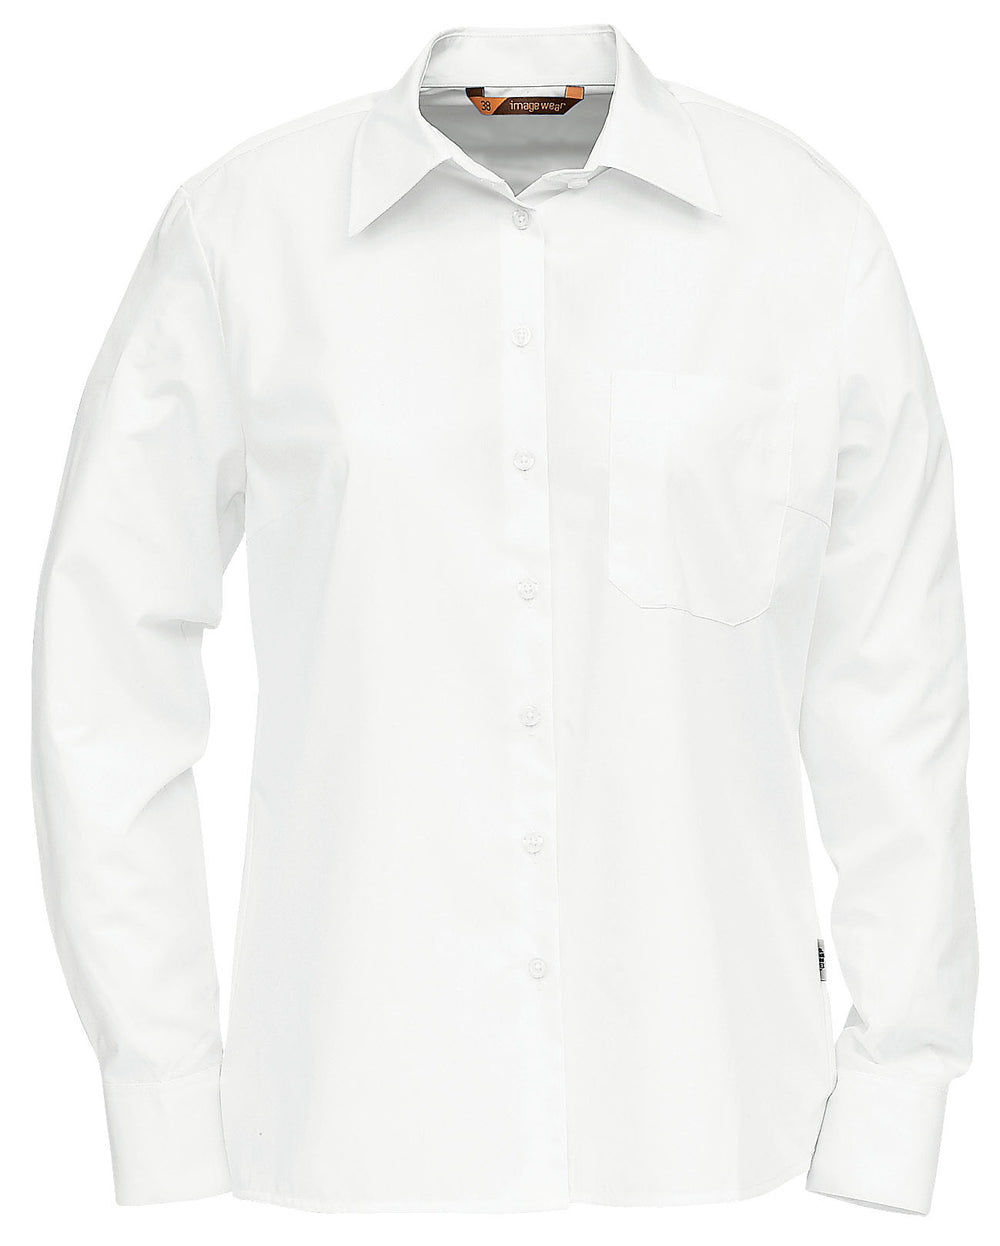 Valkoinen naisille muotoiltu pitkähihainen paitapusero. Rintatasku, jossa erillinen kynätasku. Rintamuotolaskokset. Klassisen tyylikäs malli. Materiaali on helppohoitoinen puuvillasekoite. 